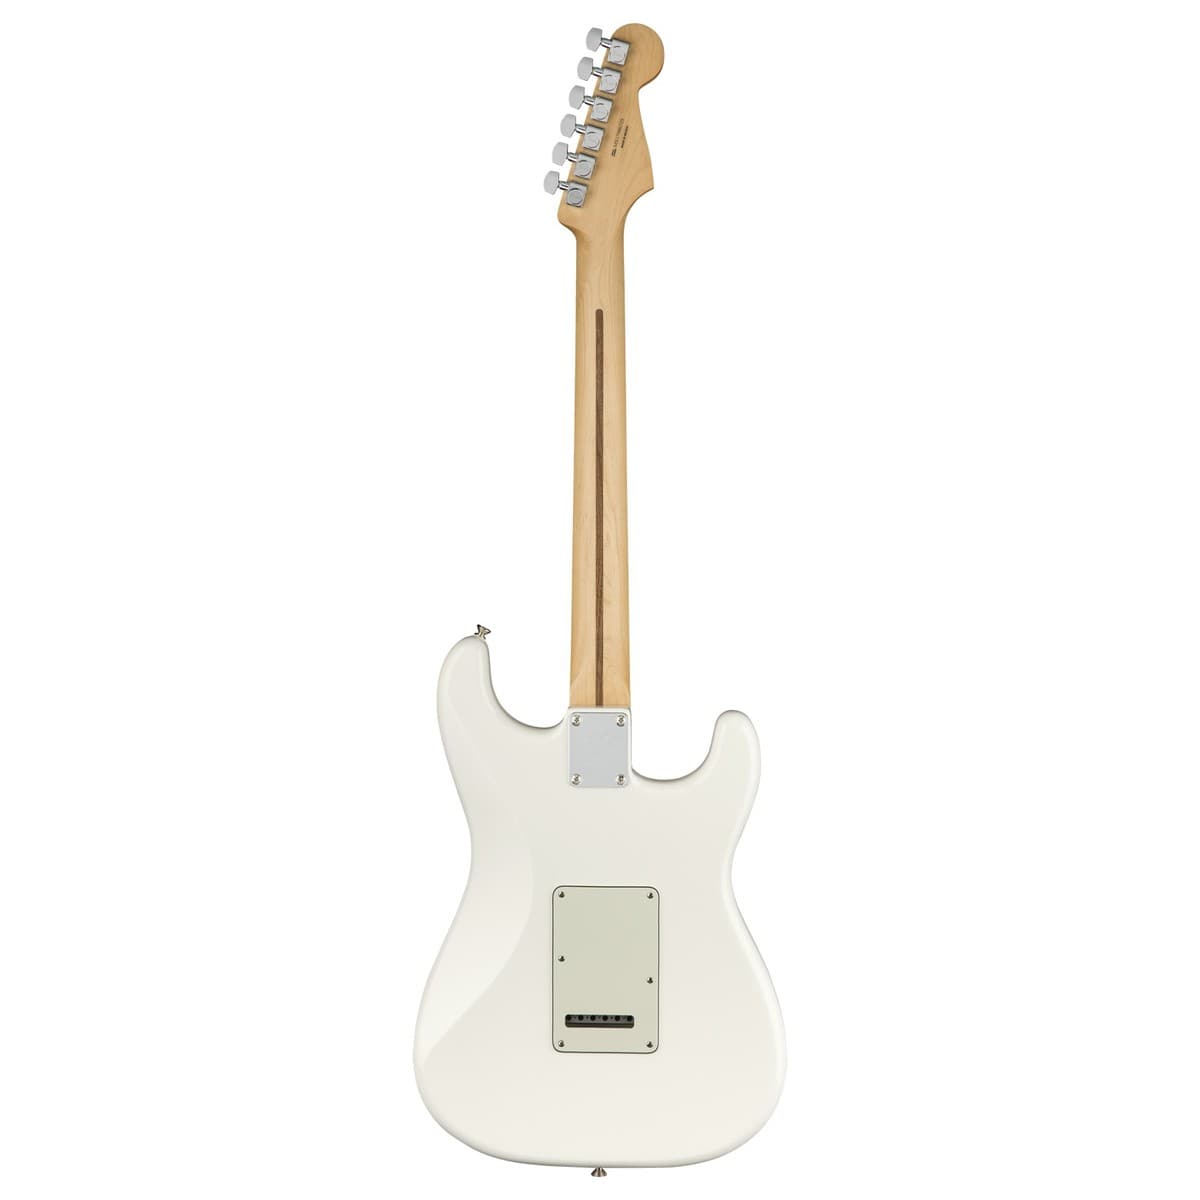 Fender Player Stratocaster - Maple Fingerboard - Polar White - Left Handed